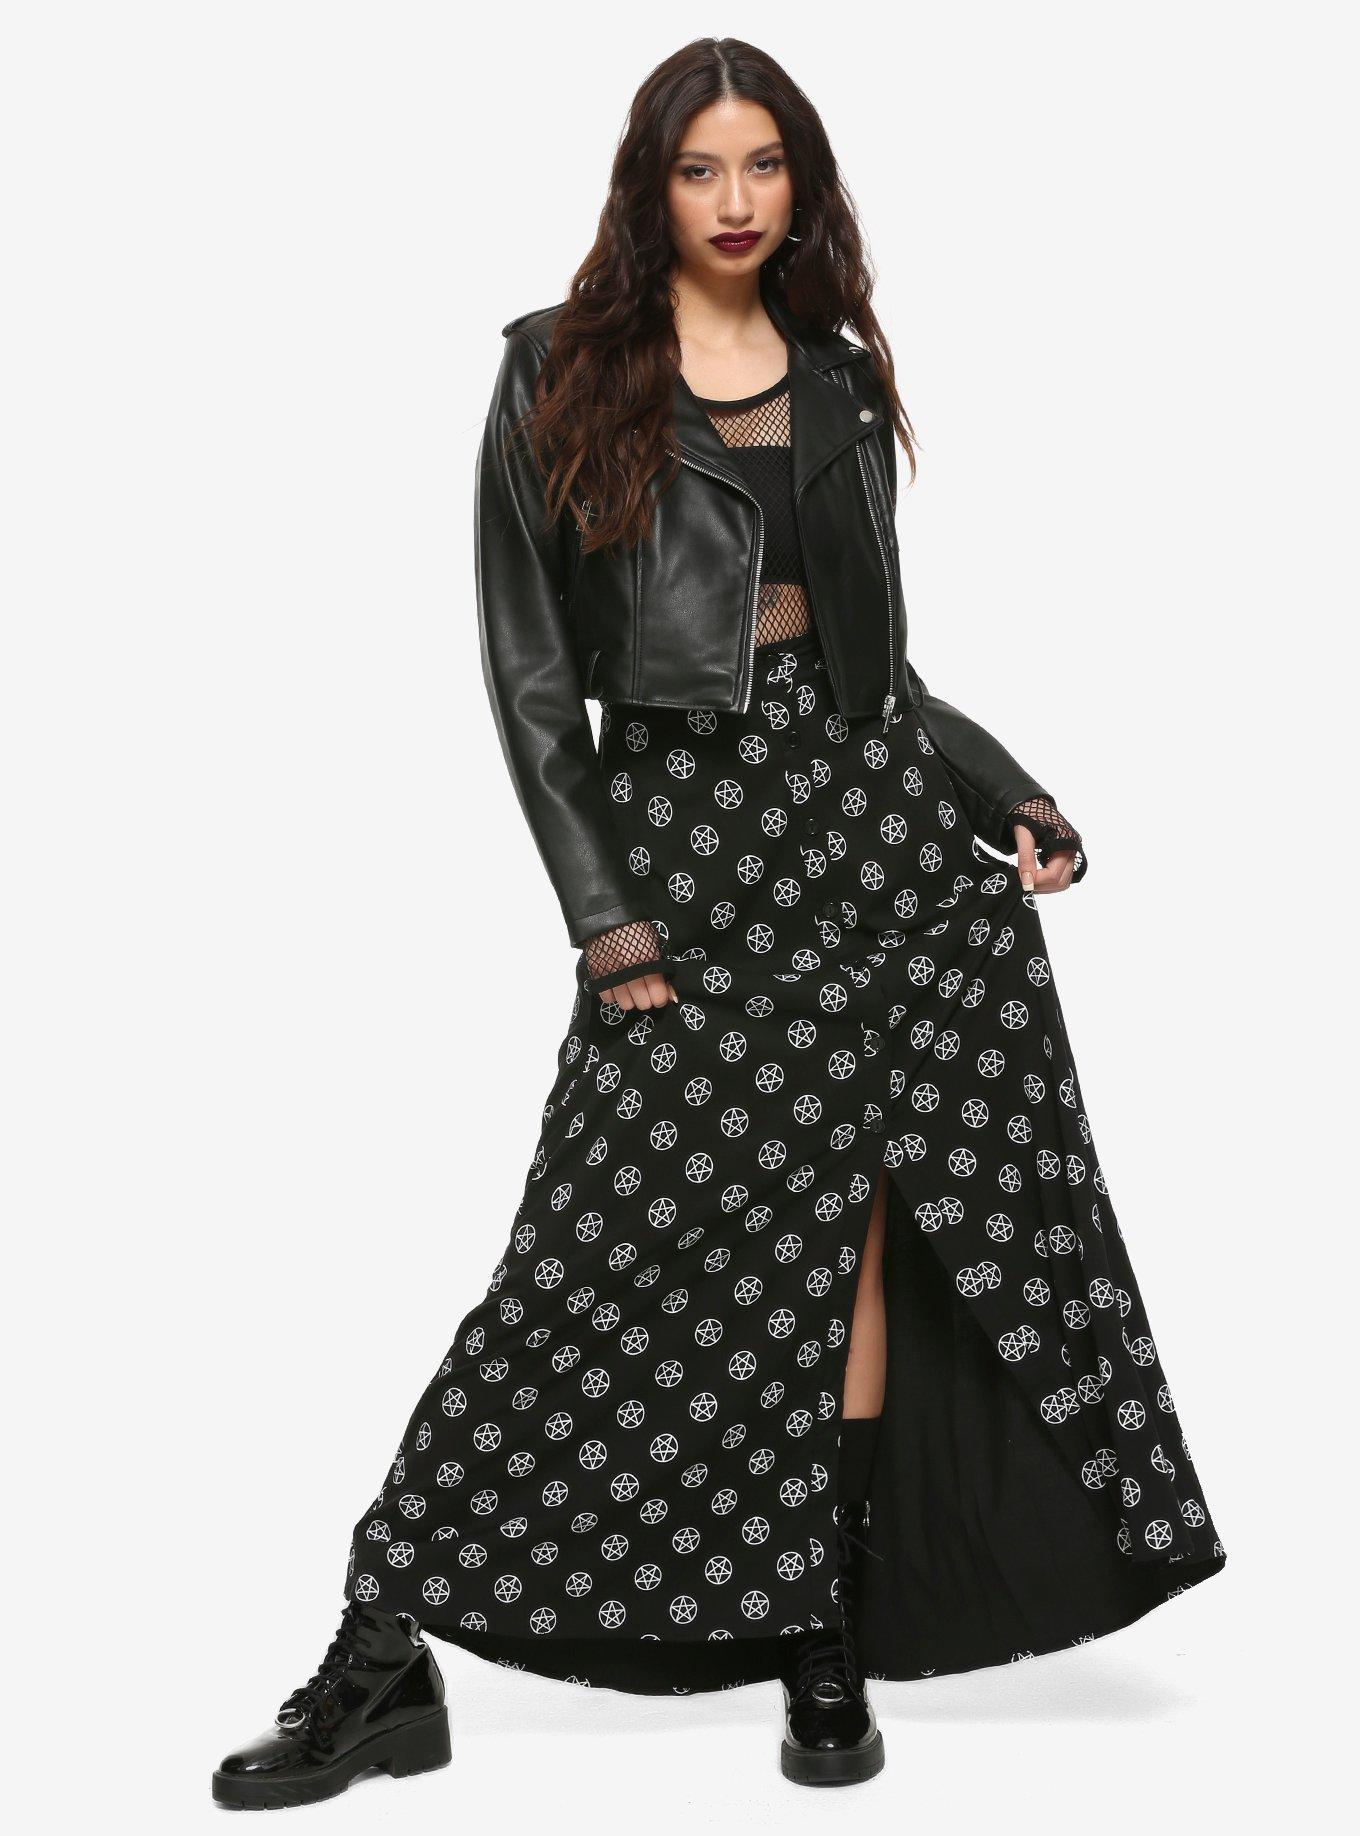 Black & White Pentagrams Maxi Skirt, BLACK, alternate